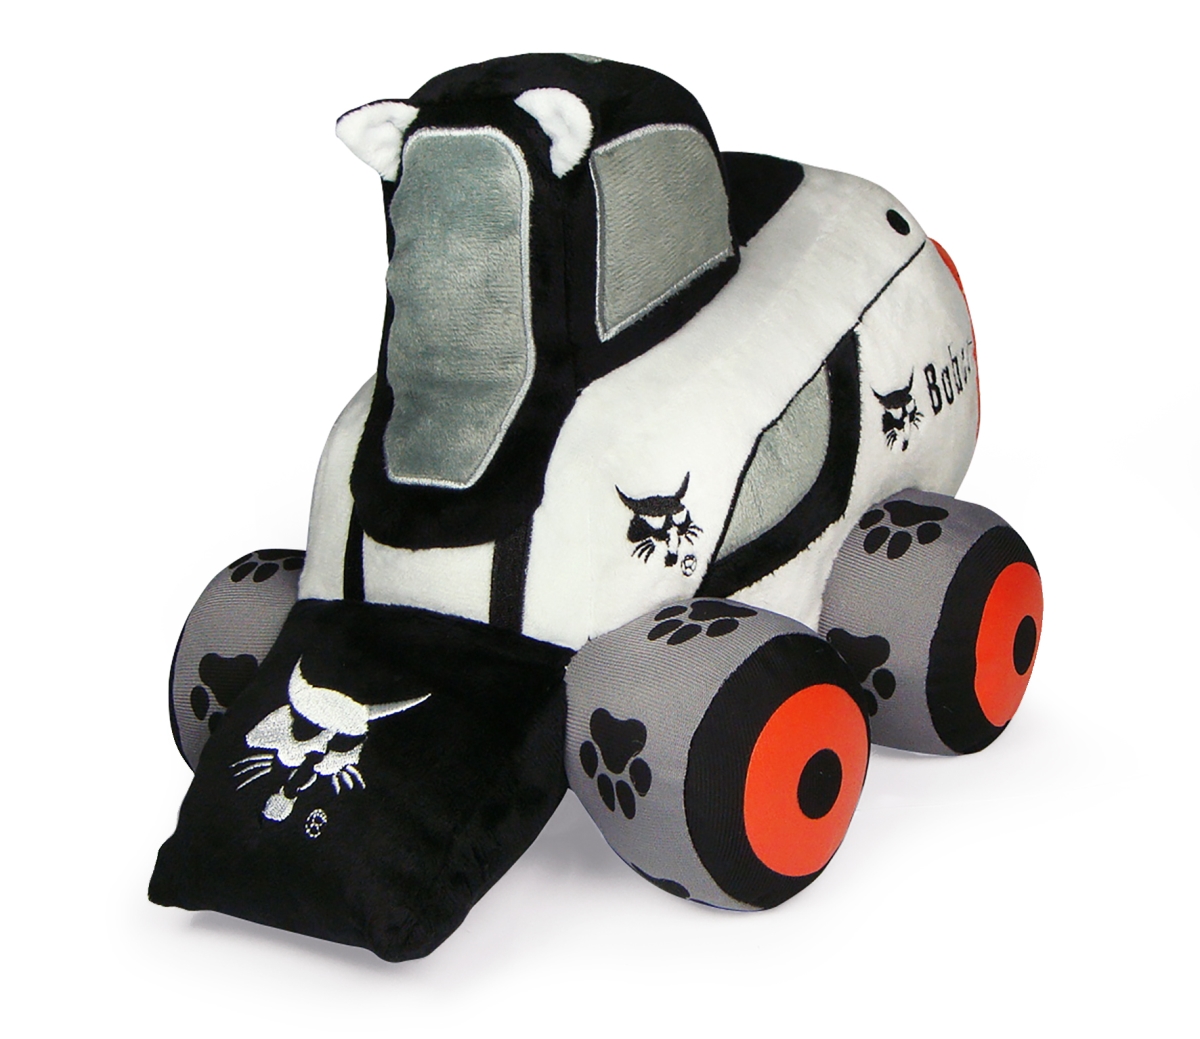 Uhk1108 Bobcat Skid Wheel Loader Plush Toy